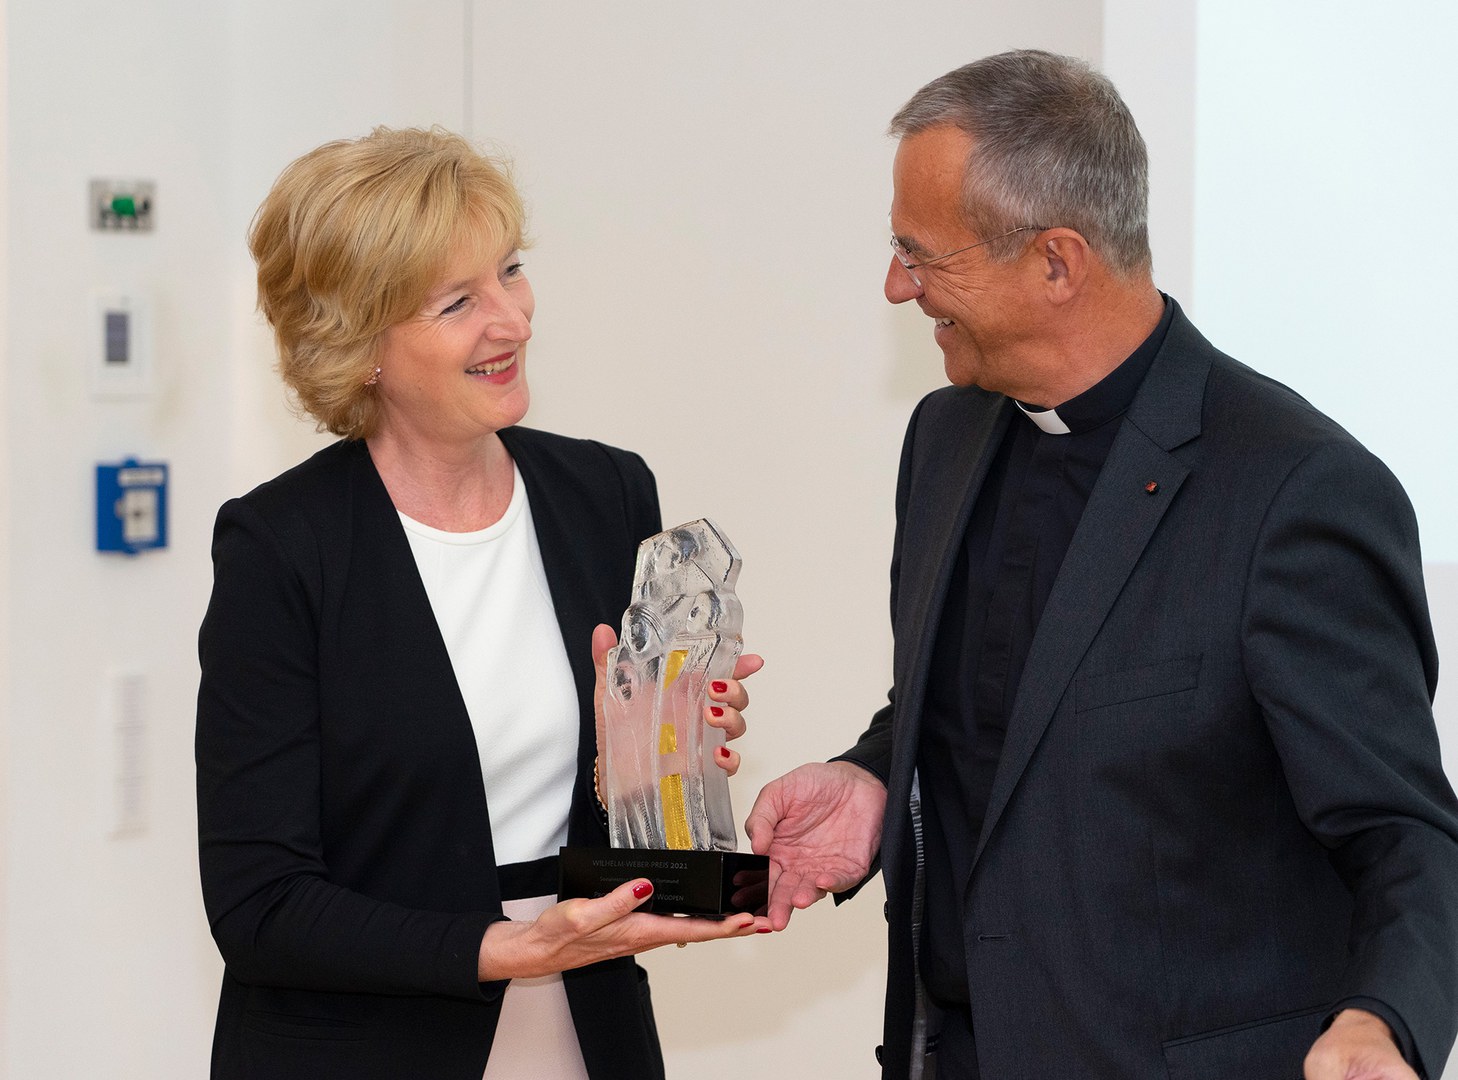 Prof. Dr. Christiane Woopen erhielt in der Kommende Dortmund den Wilhelm-Weber-Preis für besondere Verdienste im Geist der katholischen Sozialethik, hier mit Prälat Dr. Peter Klasvogt (Direktor der Kommende Dortmund).